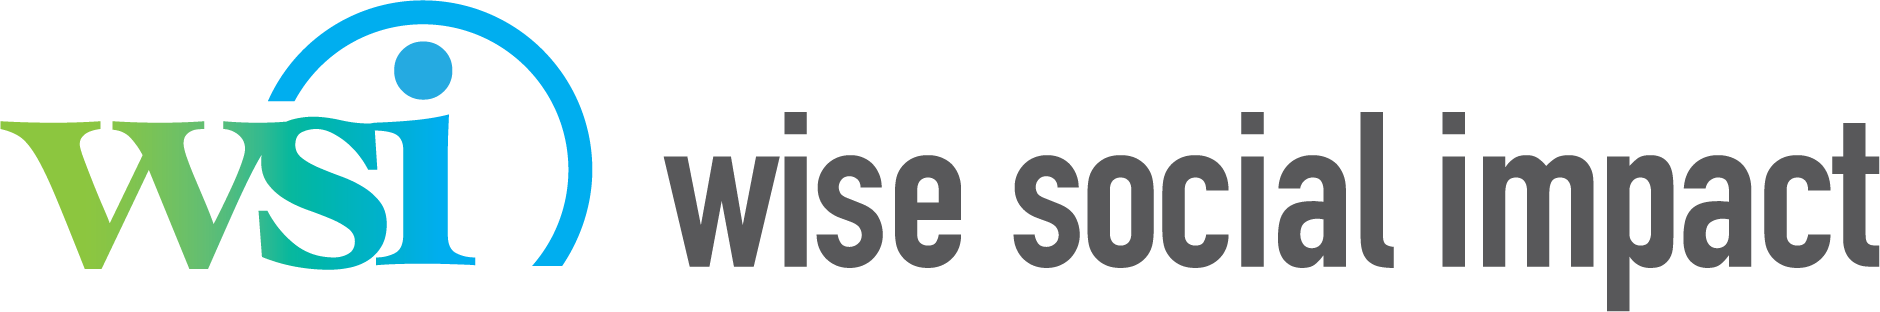 Wise Social Impact logo